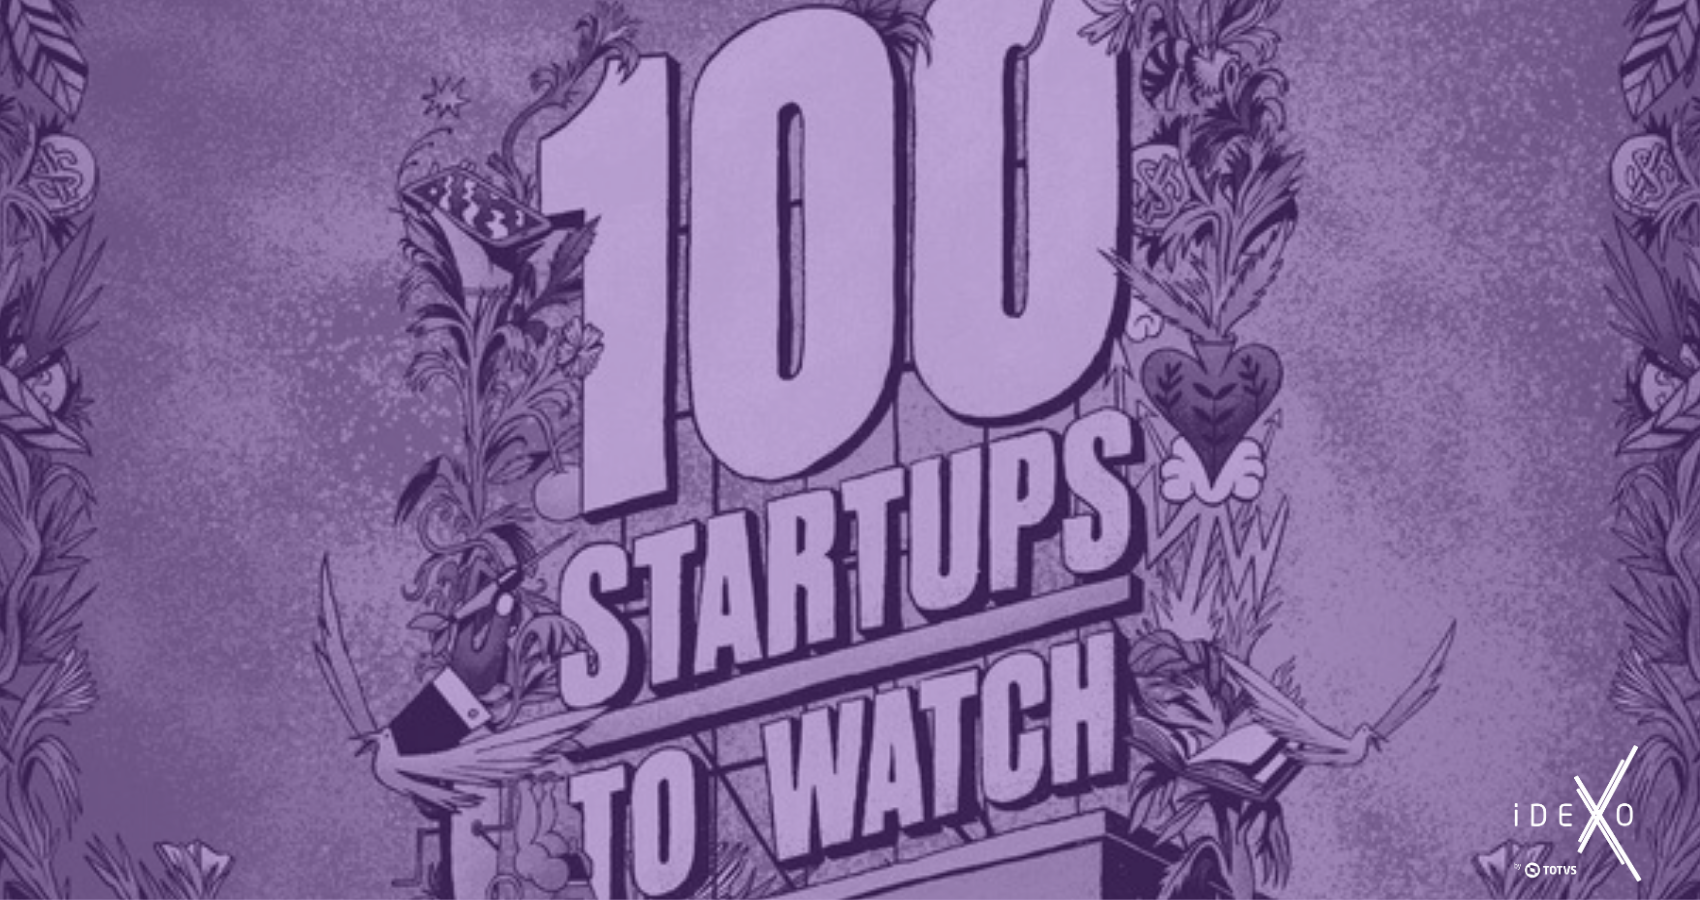 Oito startups do iDEXO estão entre as mais inovadoras do país